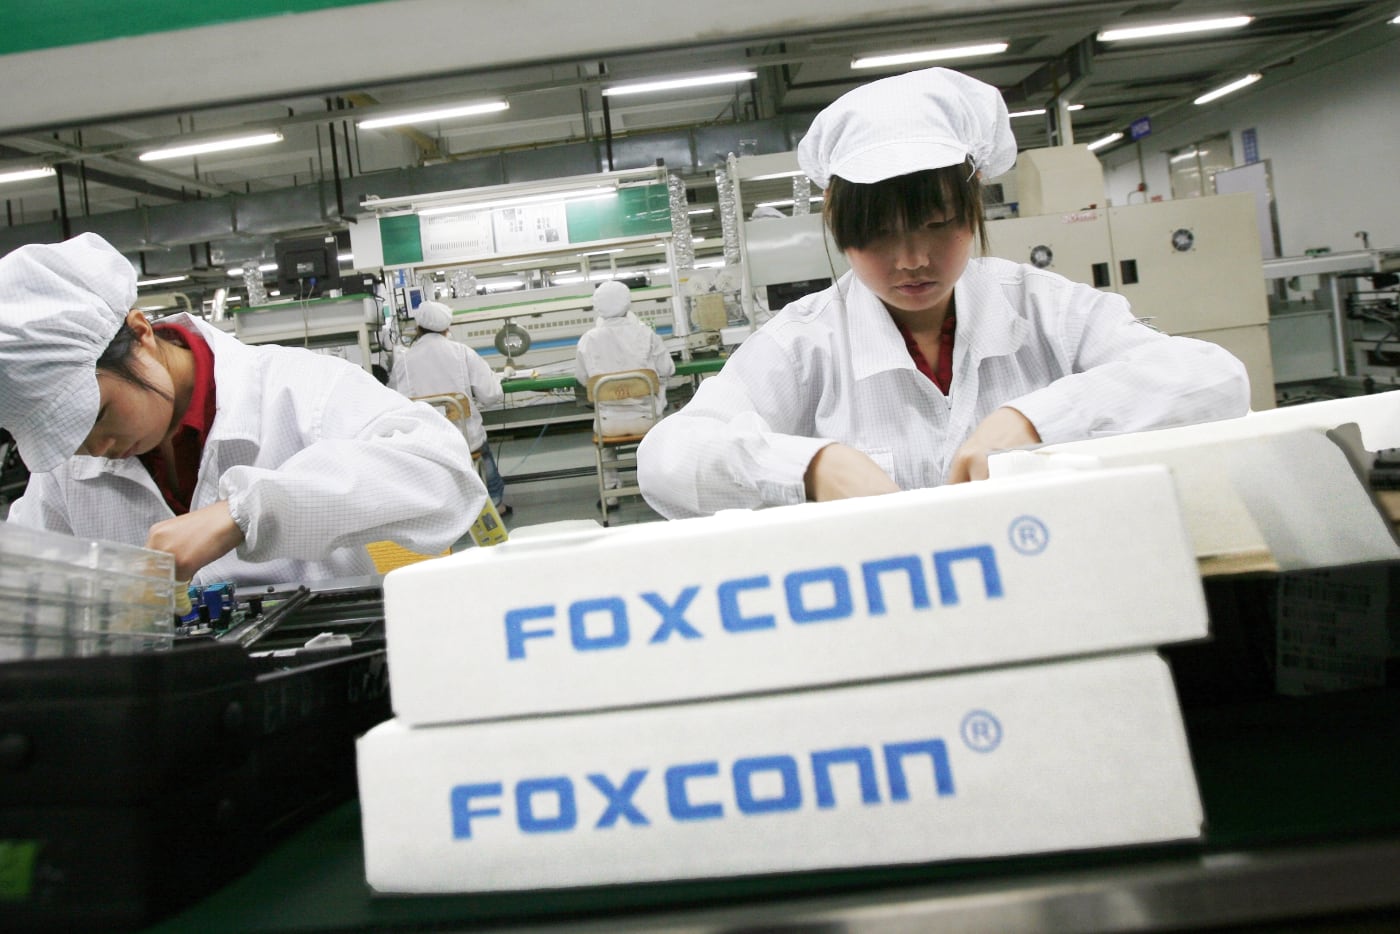 Foxconn закрыла завод по производству iPhone на семидневный карантин вместе со всеми рабочими внутри